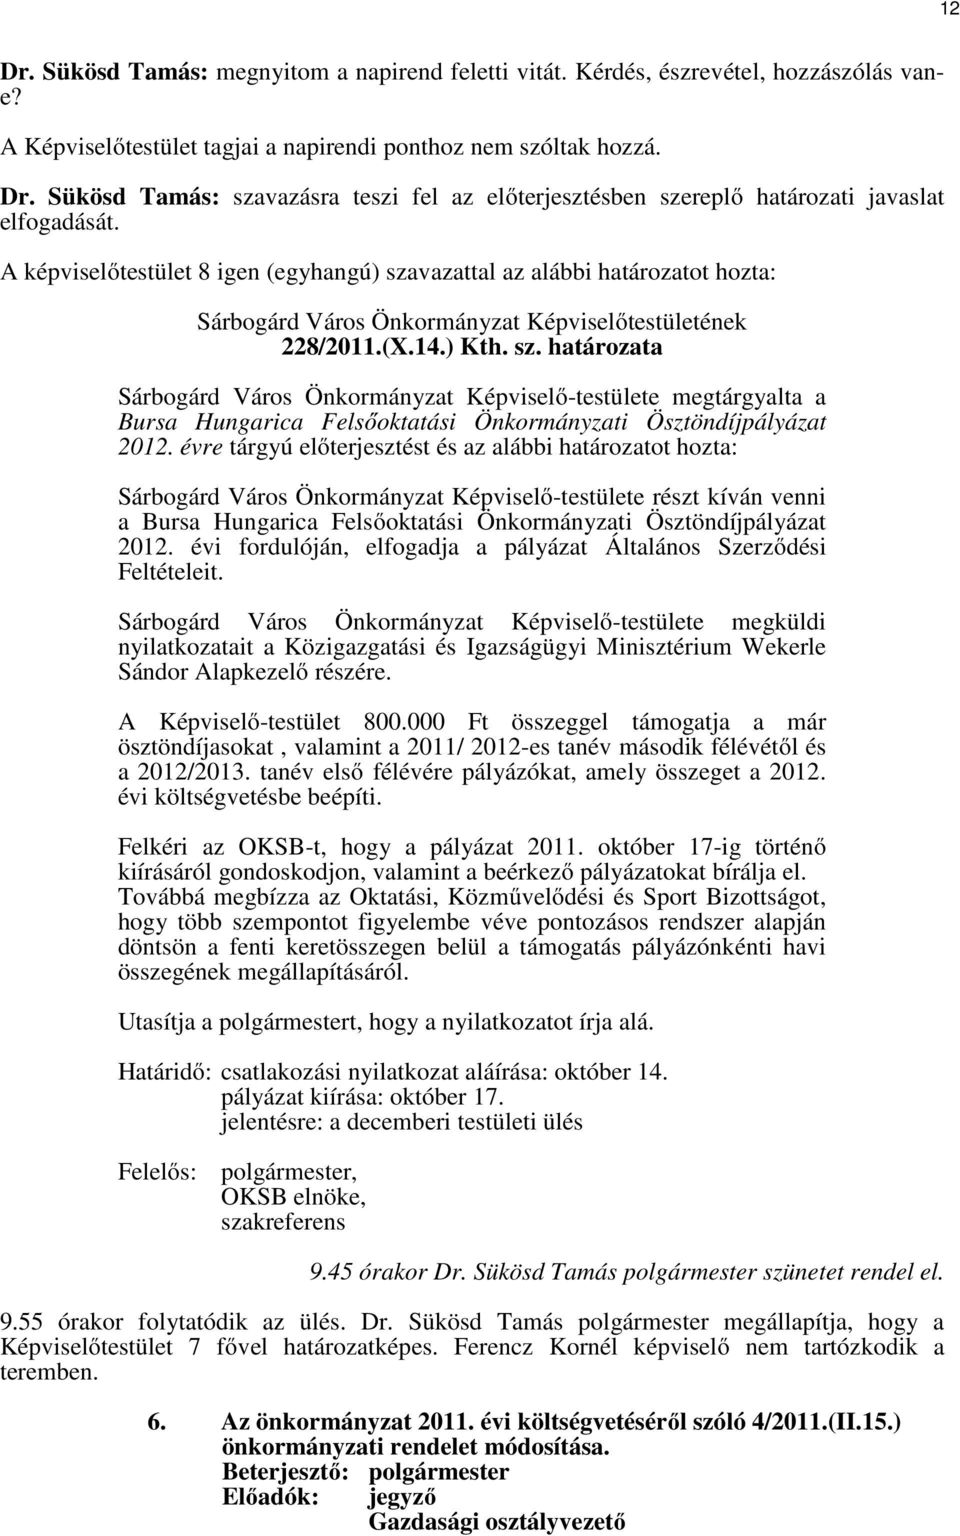 évre tárgyú előterjesztést és az alábbi határozatot hozta: Sárbogárd Város Önkormányzat Képviselő-testülete részt kíván venni a Bursa Hungarica Felsőoktatási Önkormányzati Ösztöndíjpályázat 2012.